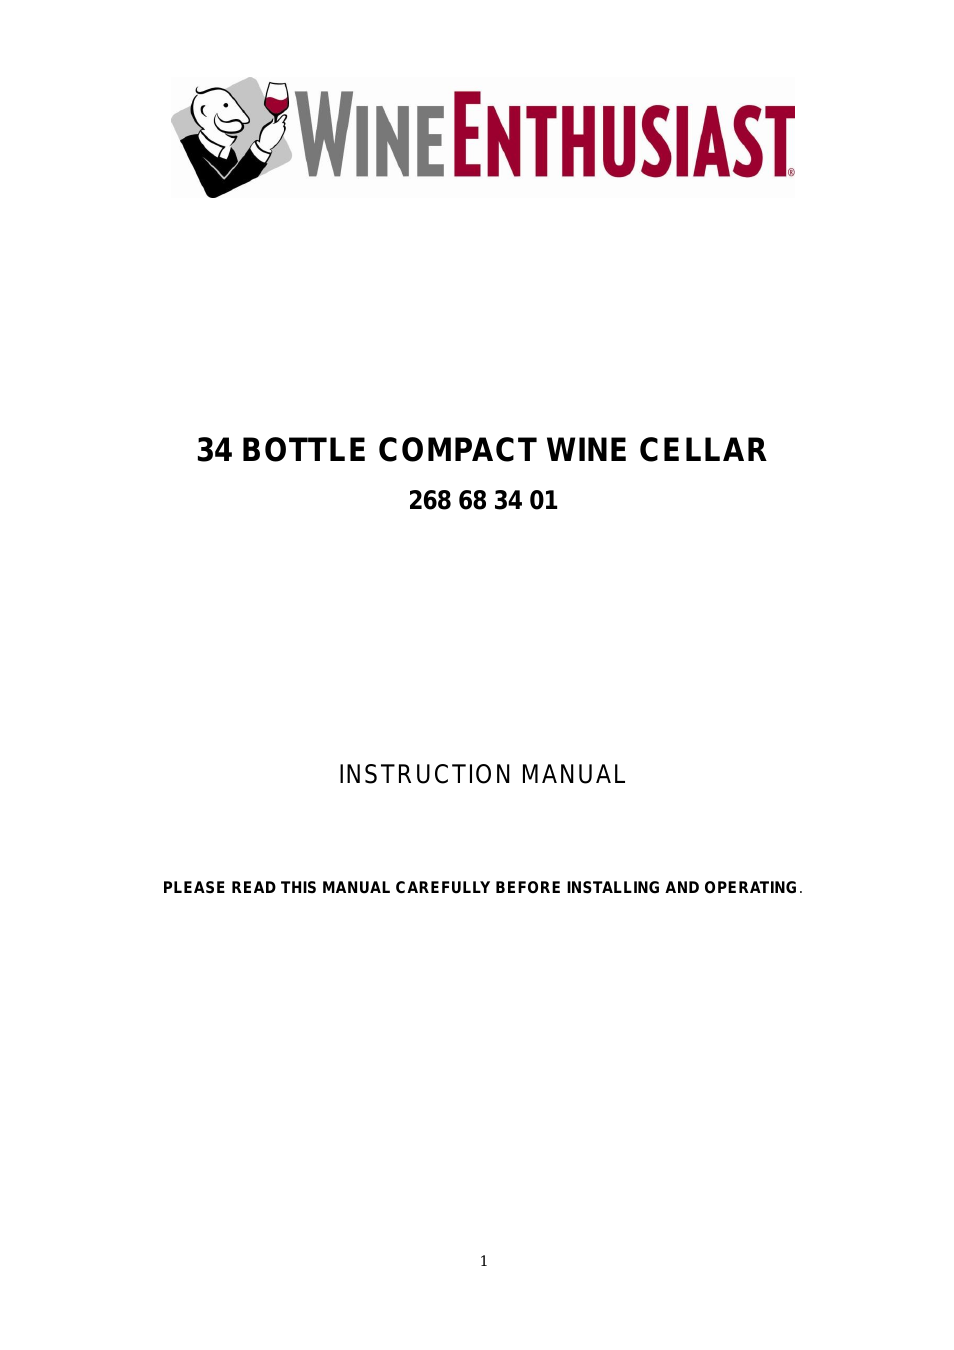 34-Bottle Evolution Series Wine Refrigerator